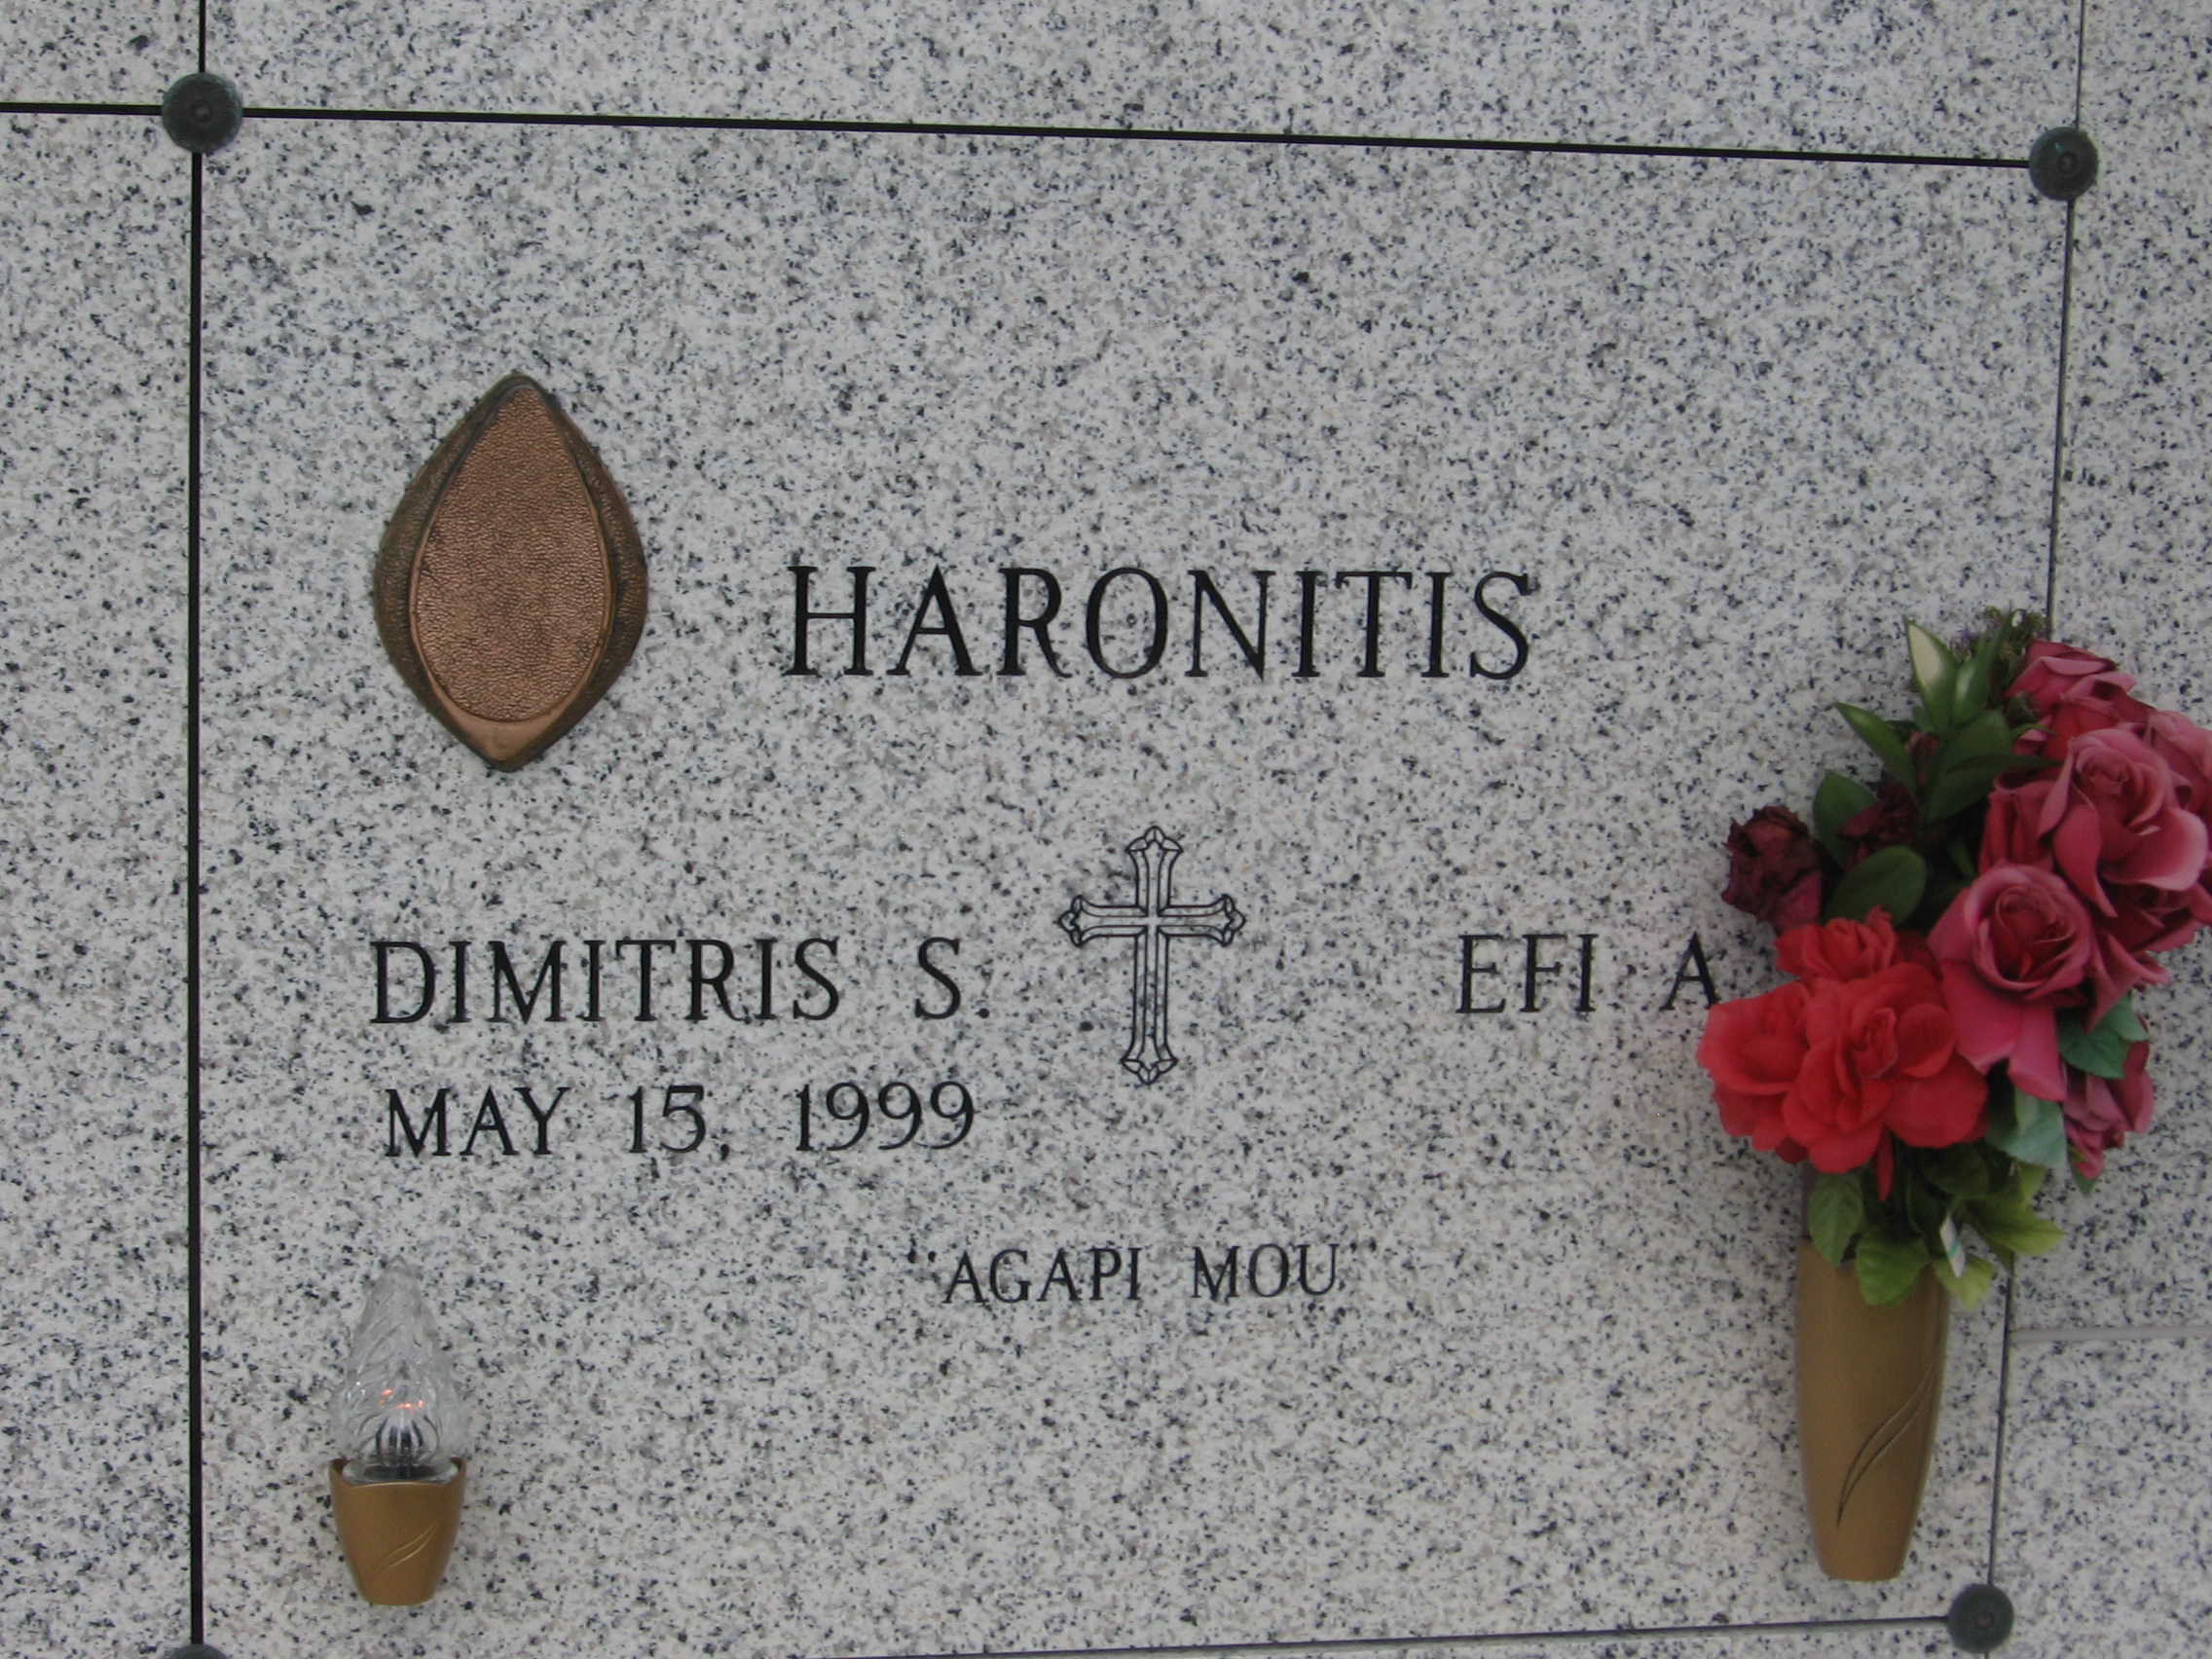 Efi Haronitis